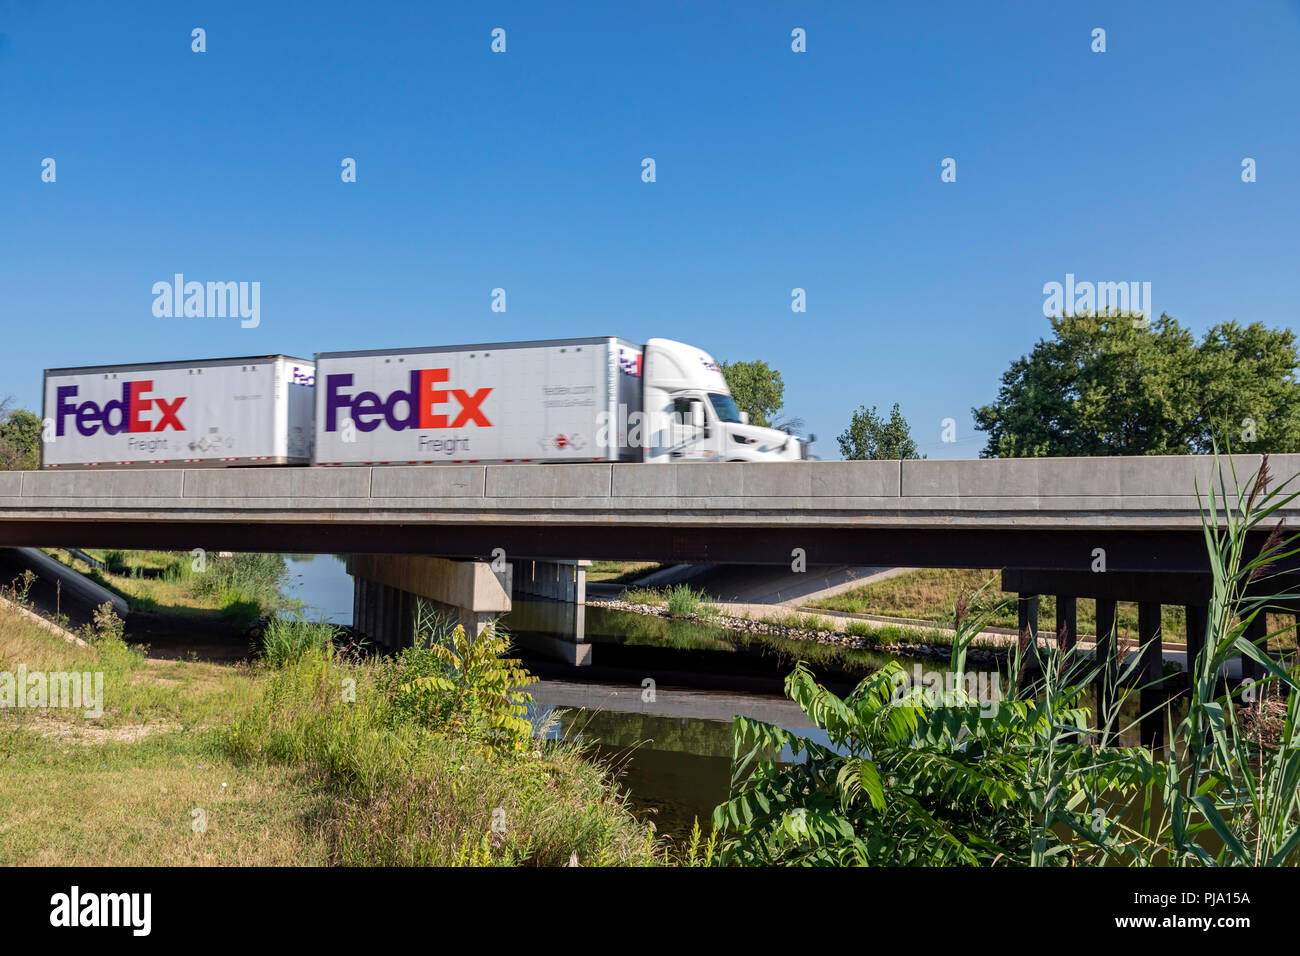 Sheffield, Illinois - Fedex carrello trasporta merci sulla Interstate 80 oltre il canale di Hennepin. Il canale è stato completato nel 1907 per collegare l'Illinois e Foto Stock